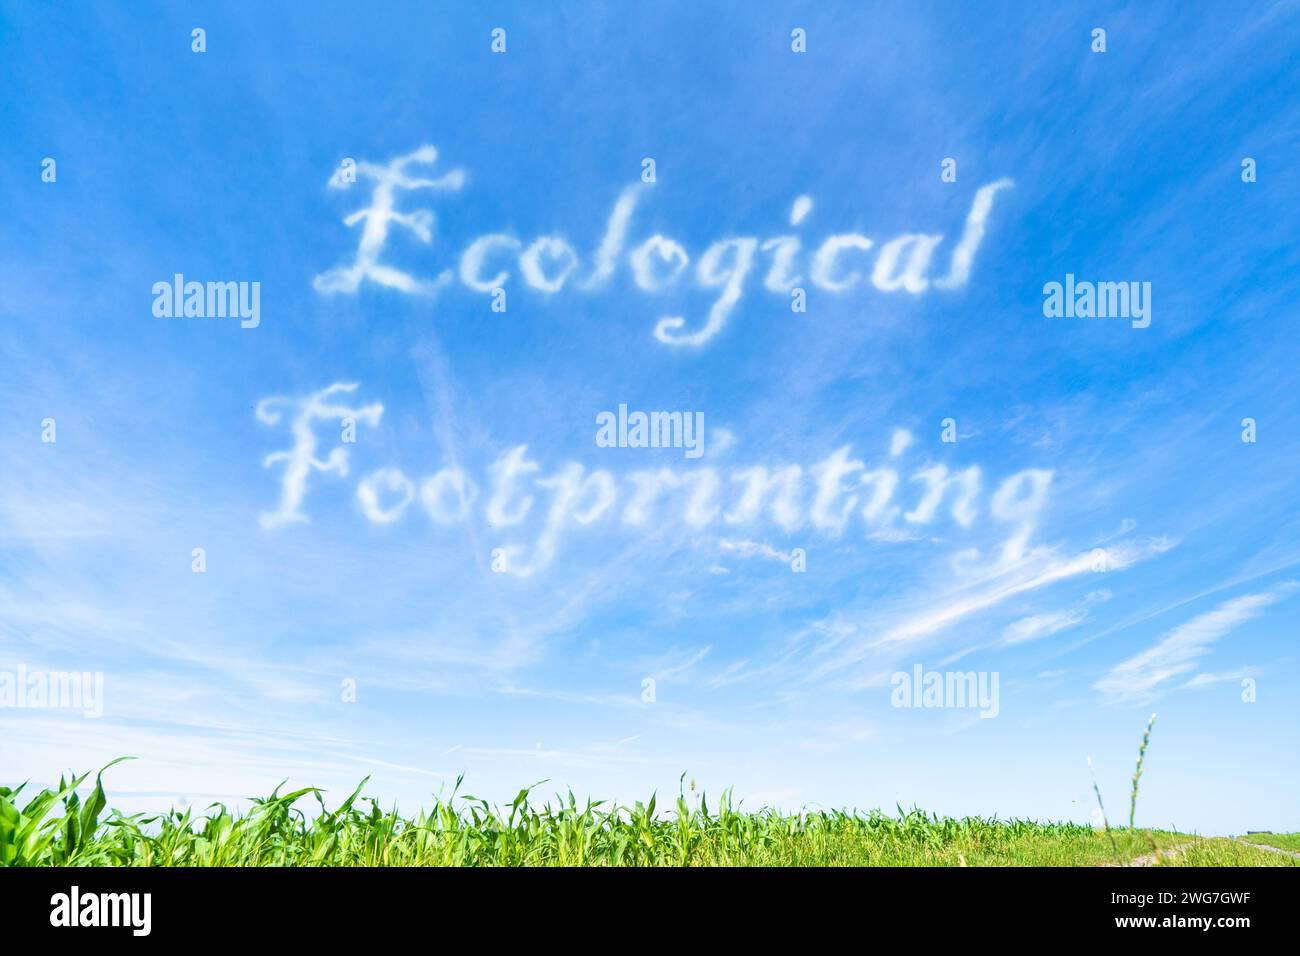 Ökologischer Fußabdruck: Messung der Umweltauswirkungen menschlicher Tätigkeiten im Hinblick auf den globalen Ressourcenverbrauch. Stockfoto